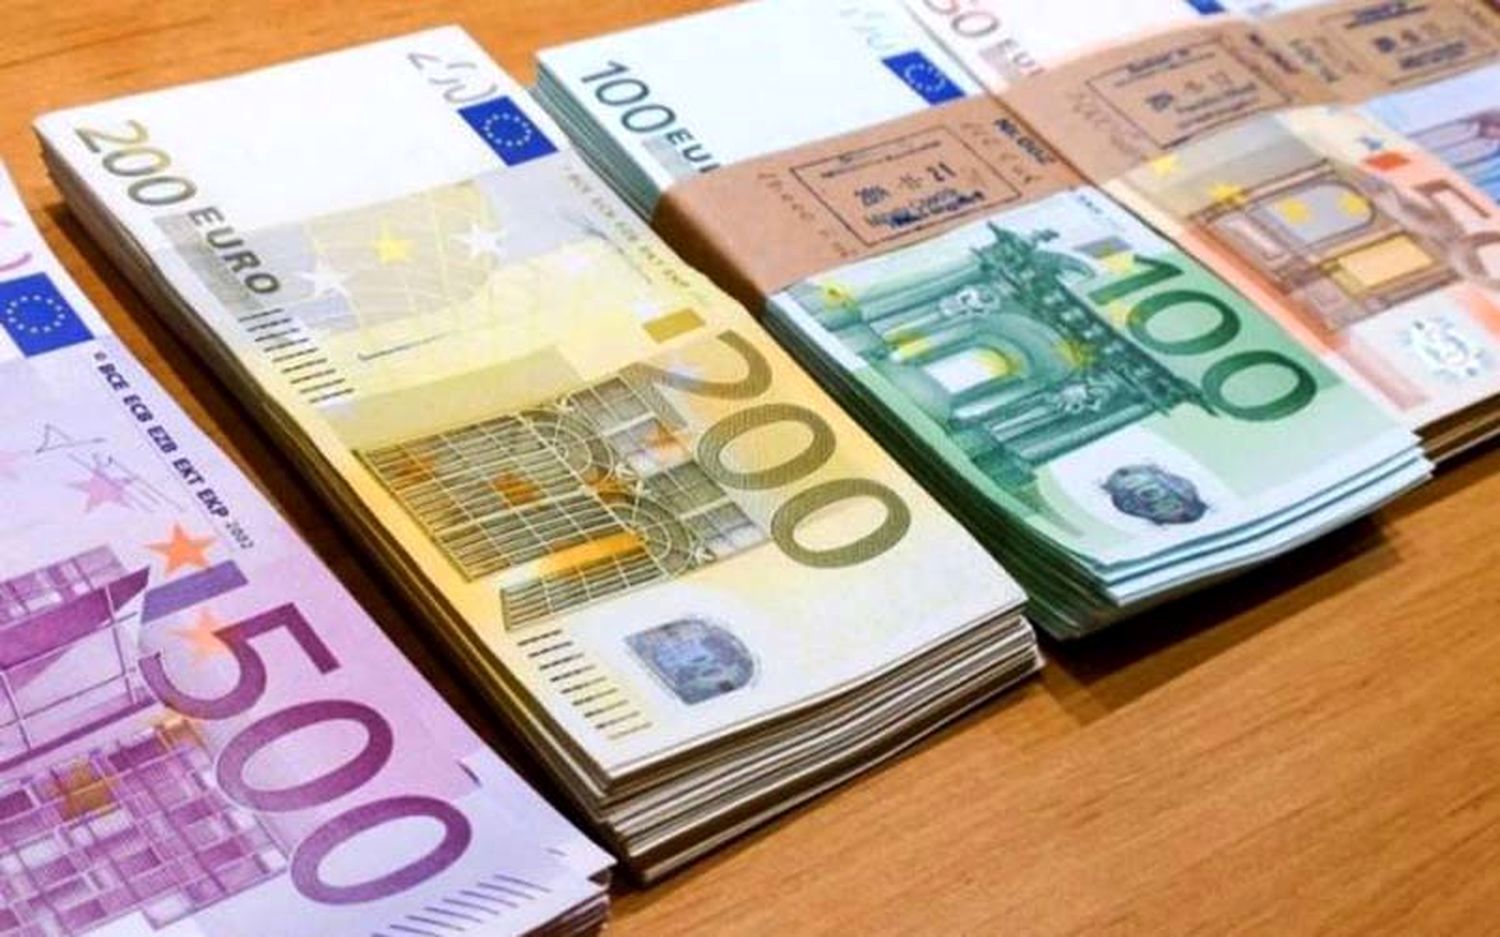 قیمت یورو و سایر ارزها امروز پنجشنبه ۹۹/۰۵/۰۹| جهش ۳۰۰تومانی قیمت آزاد و رسمی